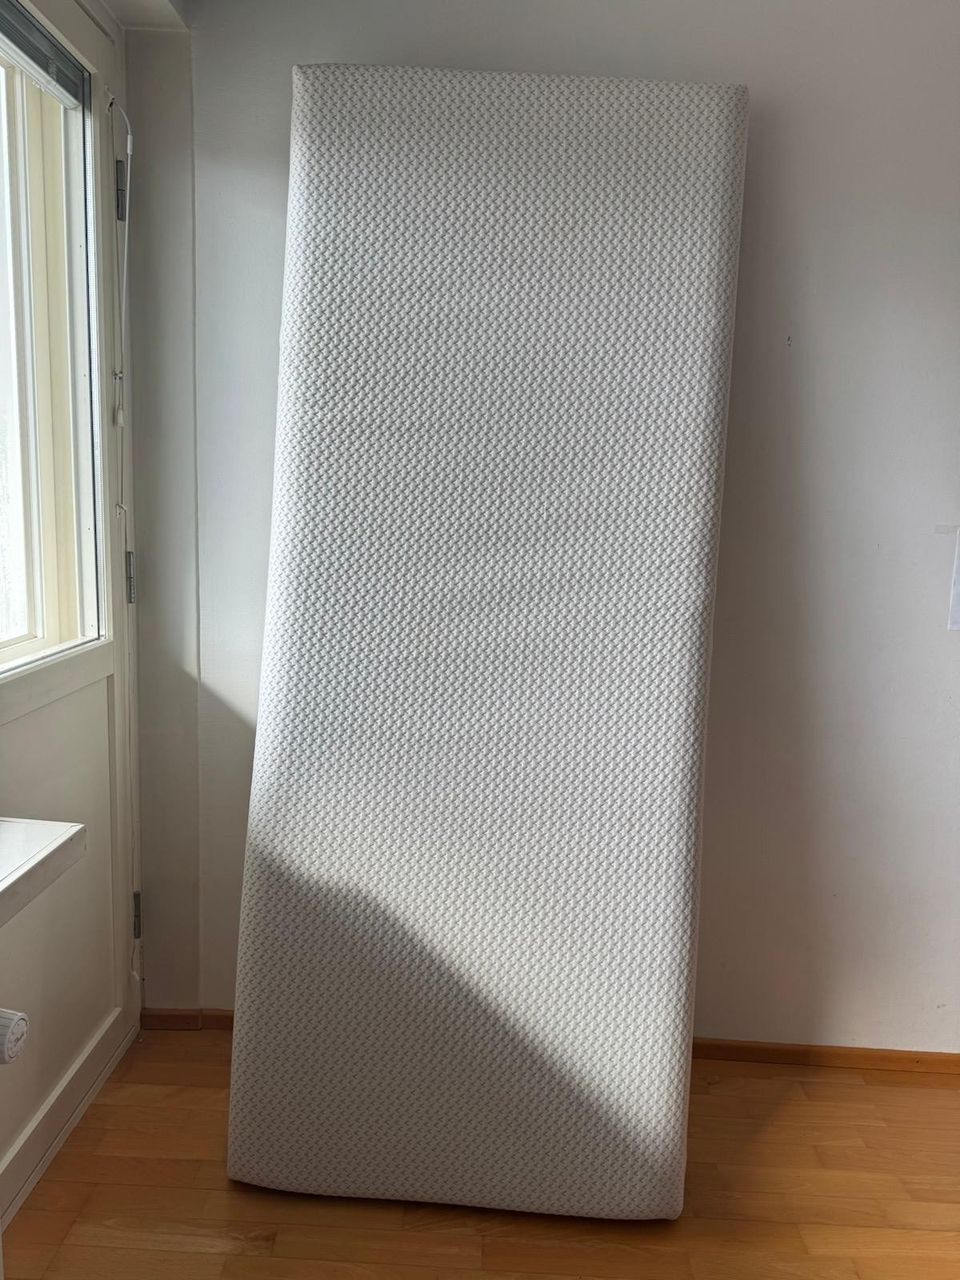 Jysk mattress